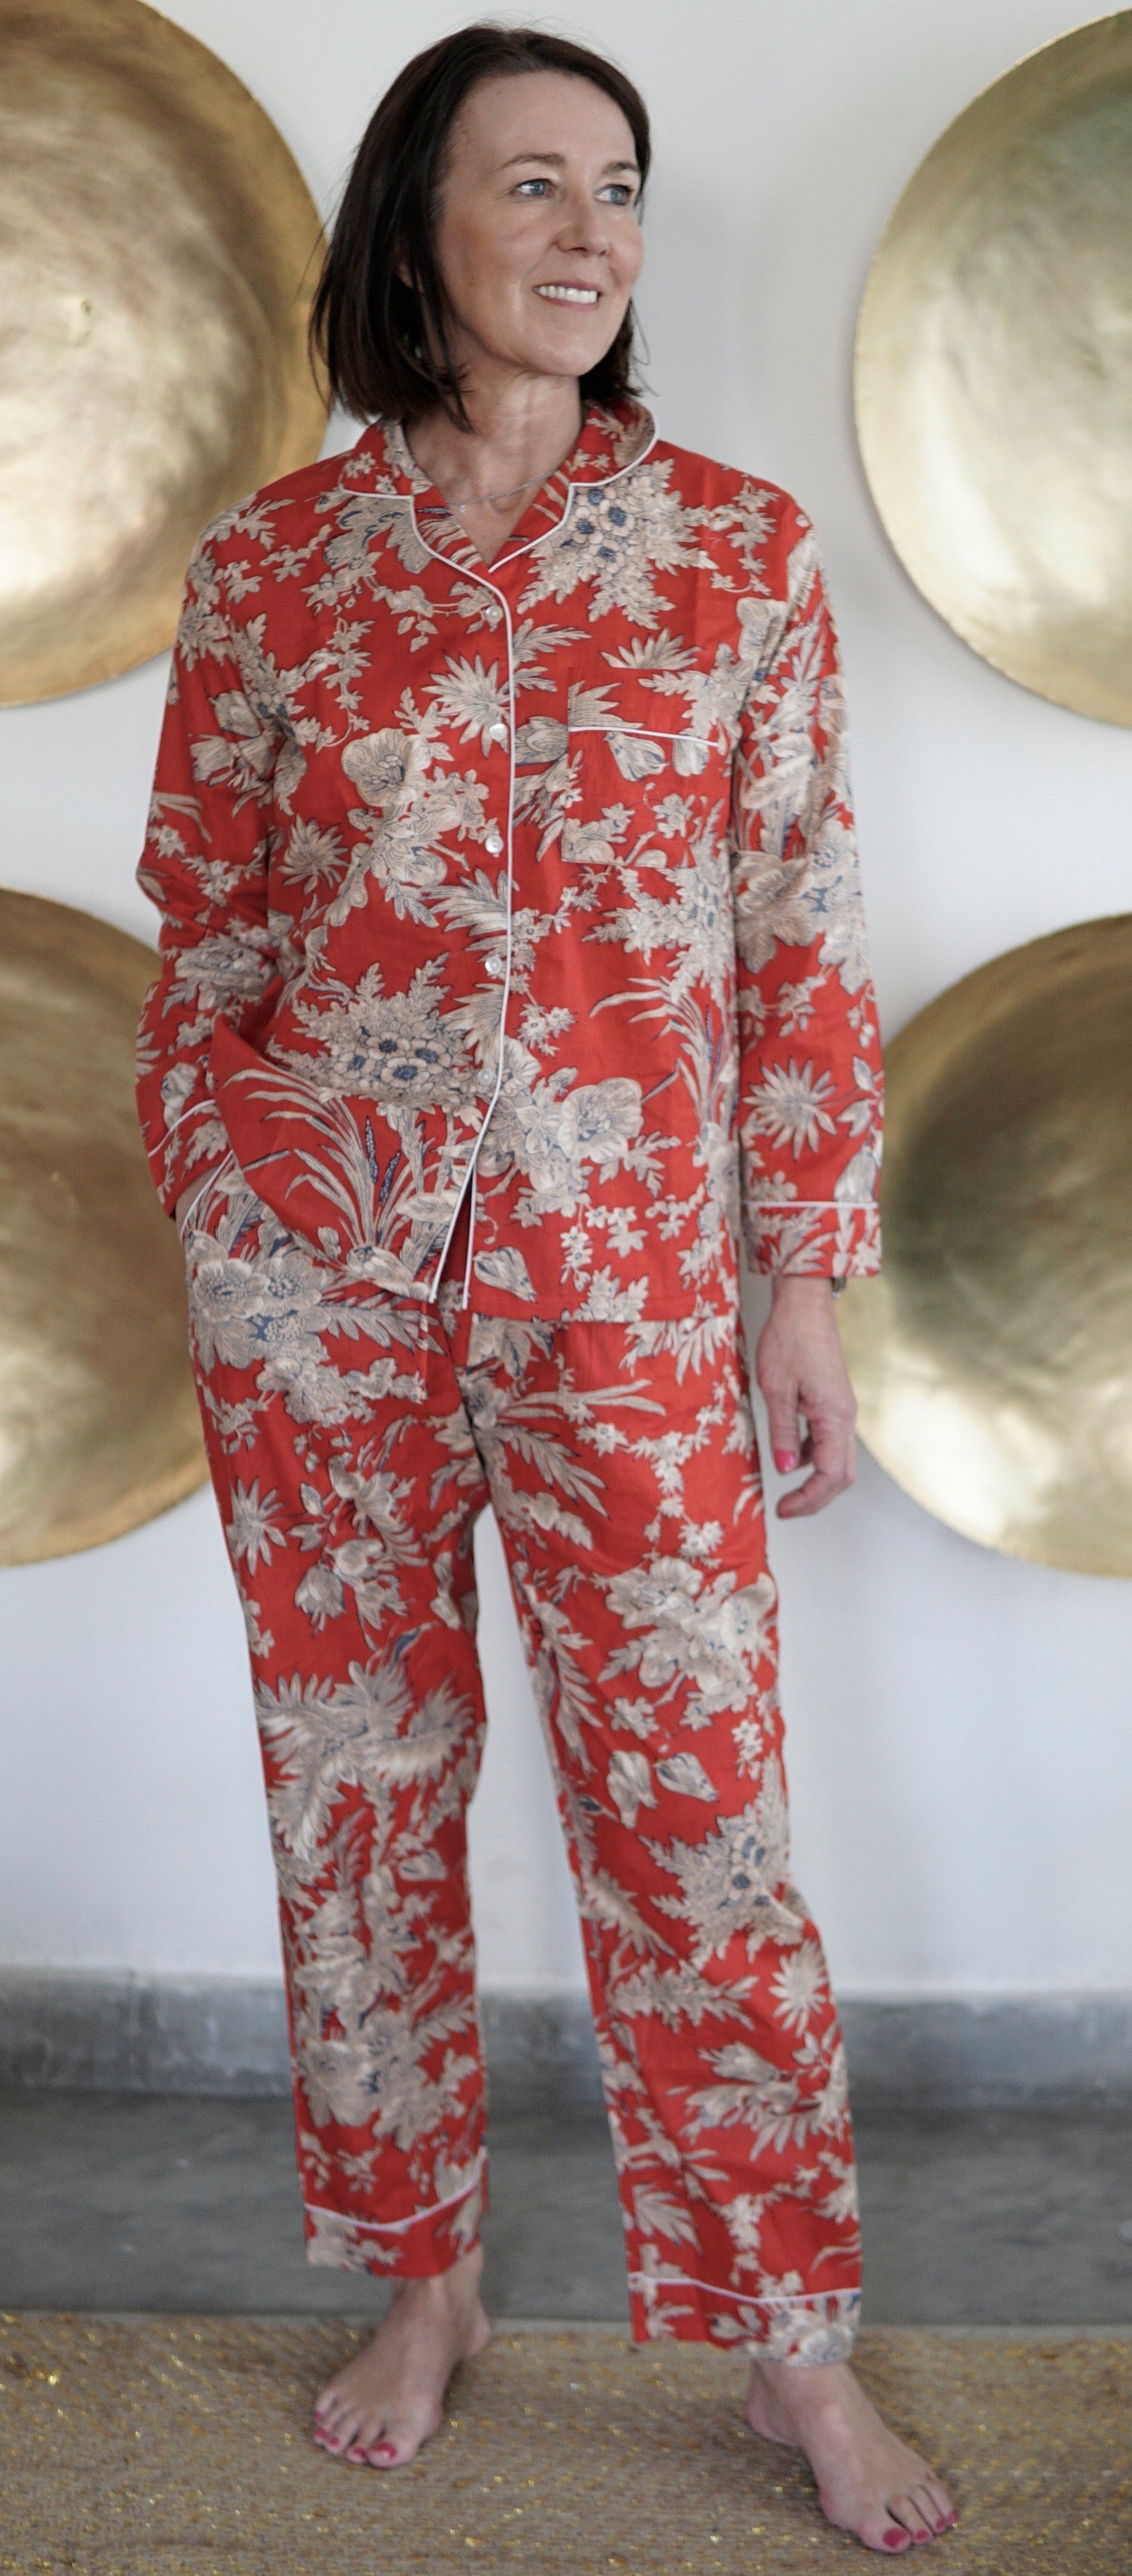 Pyjamas, cotton nightwear, red floral print ladies Pyjamas, handmade cotton pyjamas,